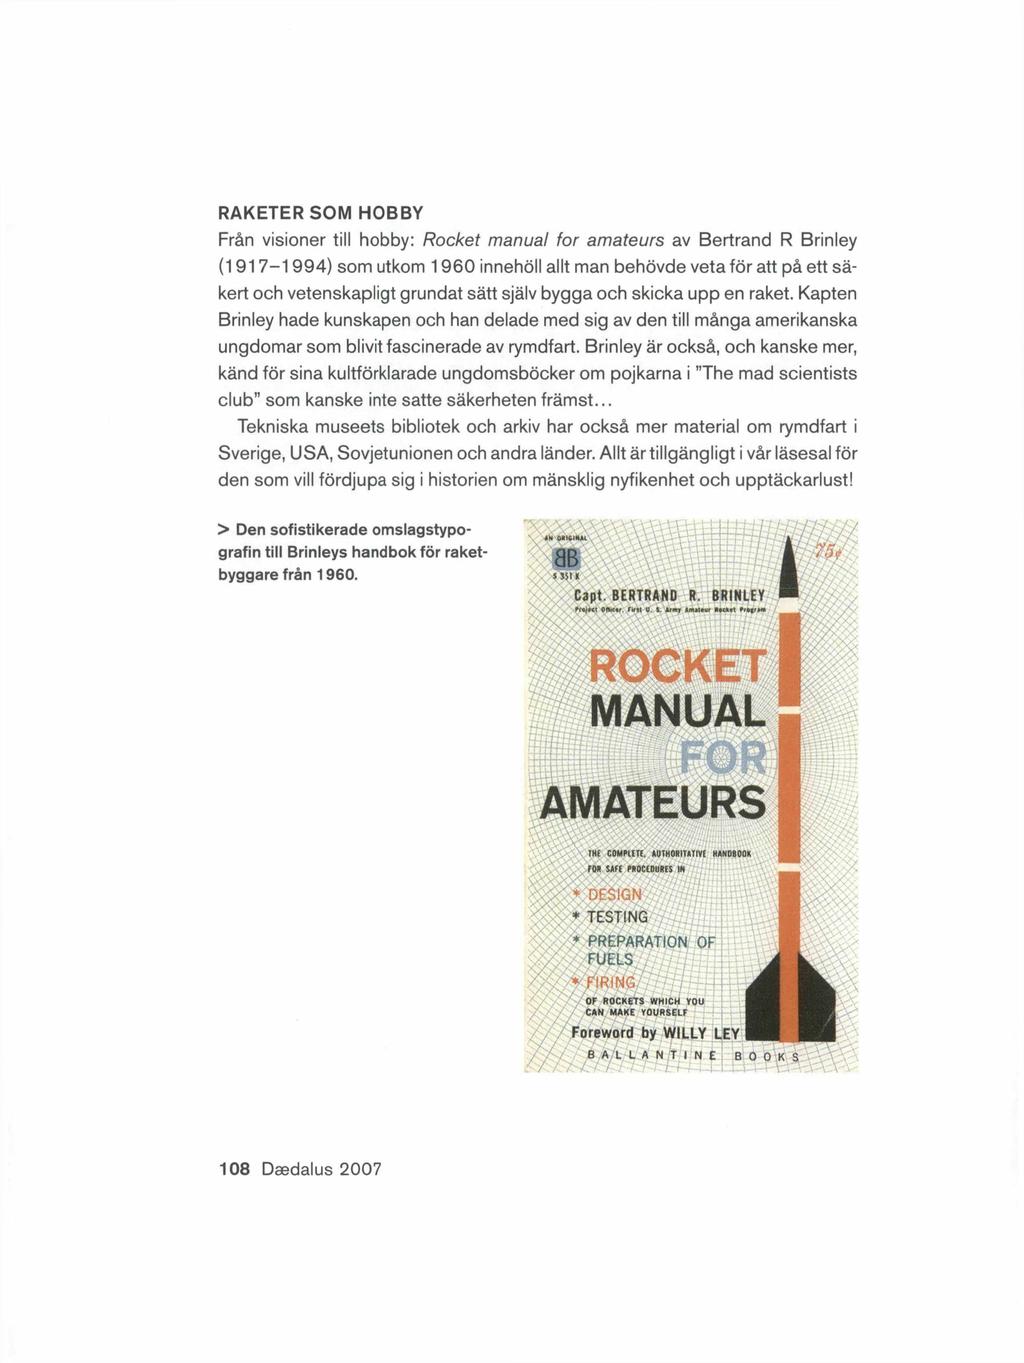 RAKETER SOM HOBBY Från visioner till hobby: Rocket manual for amateurs av Bertrand R Brinley (1917-1994) som utkom 1960 innehöll allt man behövde veta för att på ett säkert och vetenskapligt grundat